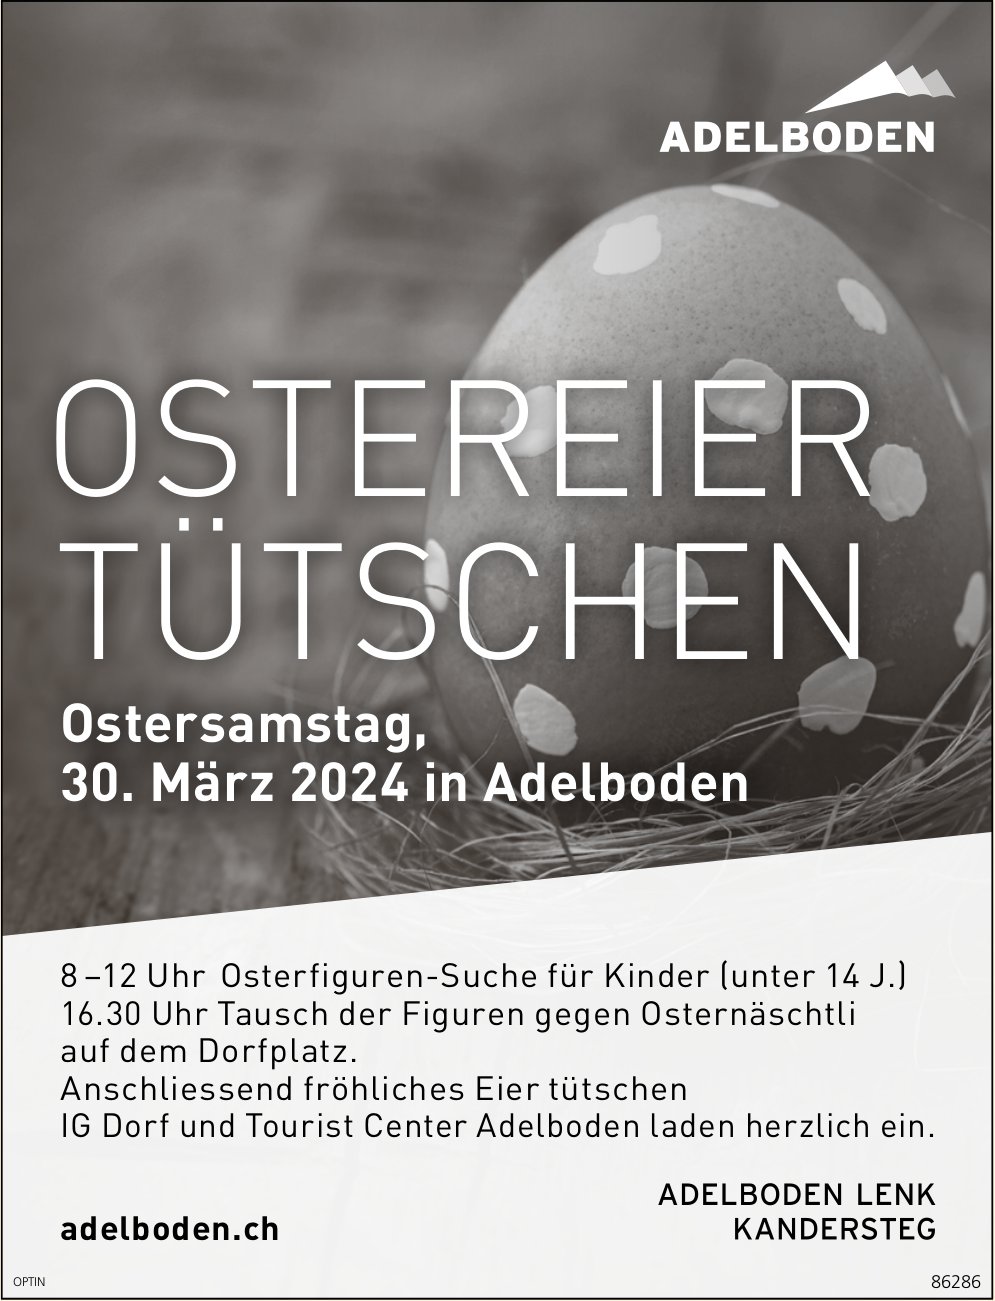 Ostereier tütschen, 30. März, Dorfplatz, Adelboden